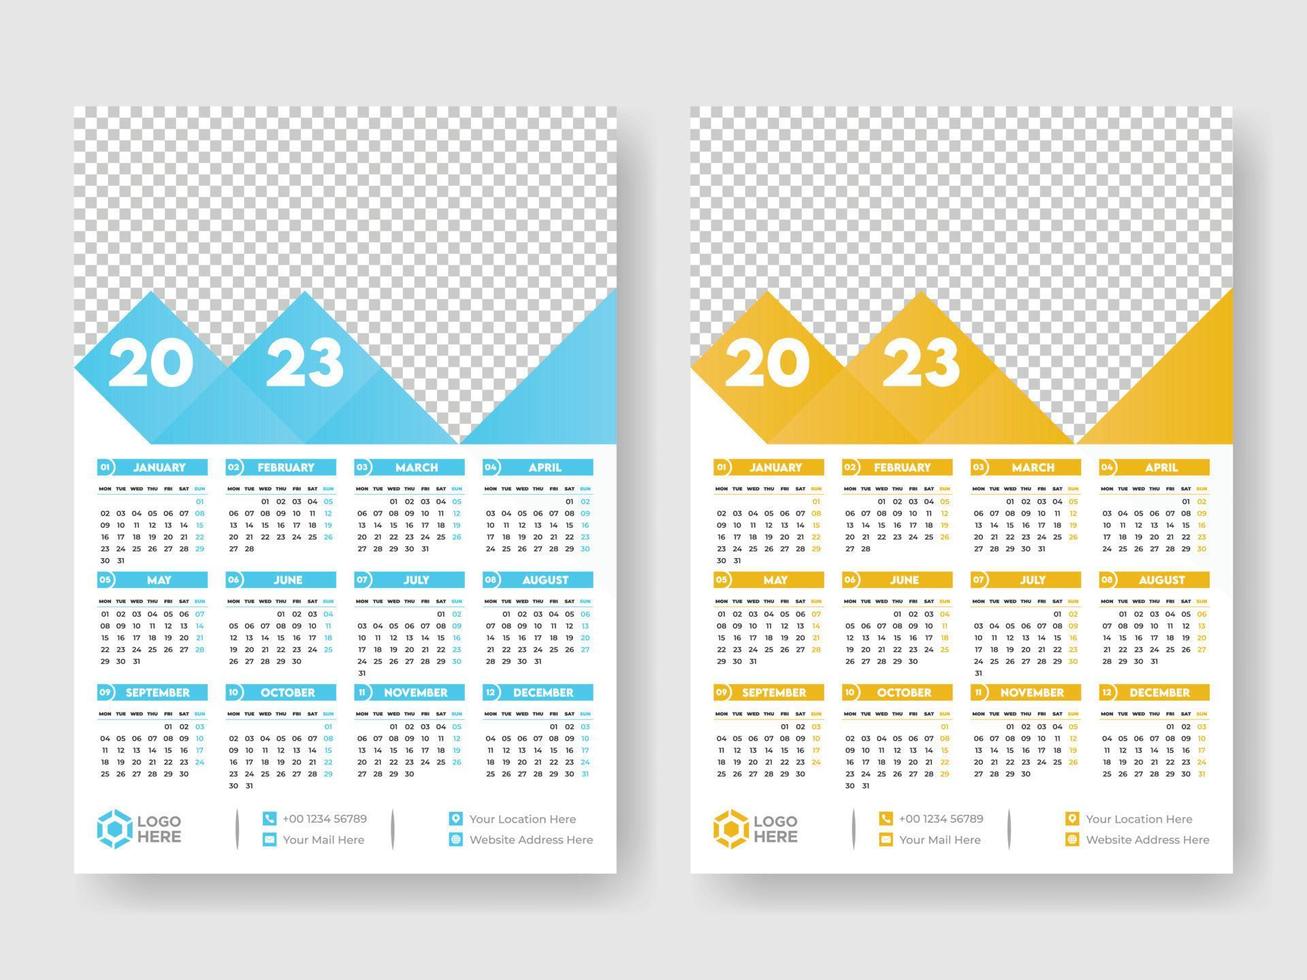 kalender 2023 vecka Start måndag företags- design mall vektor. vektor